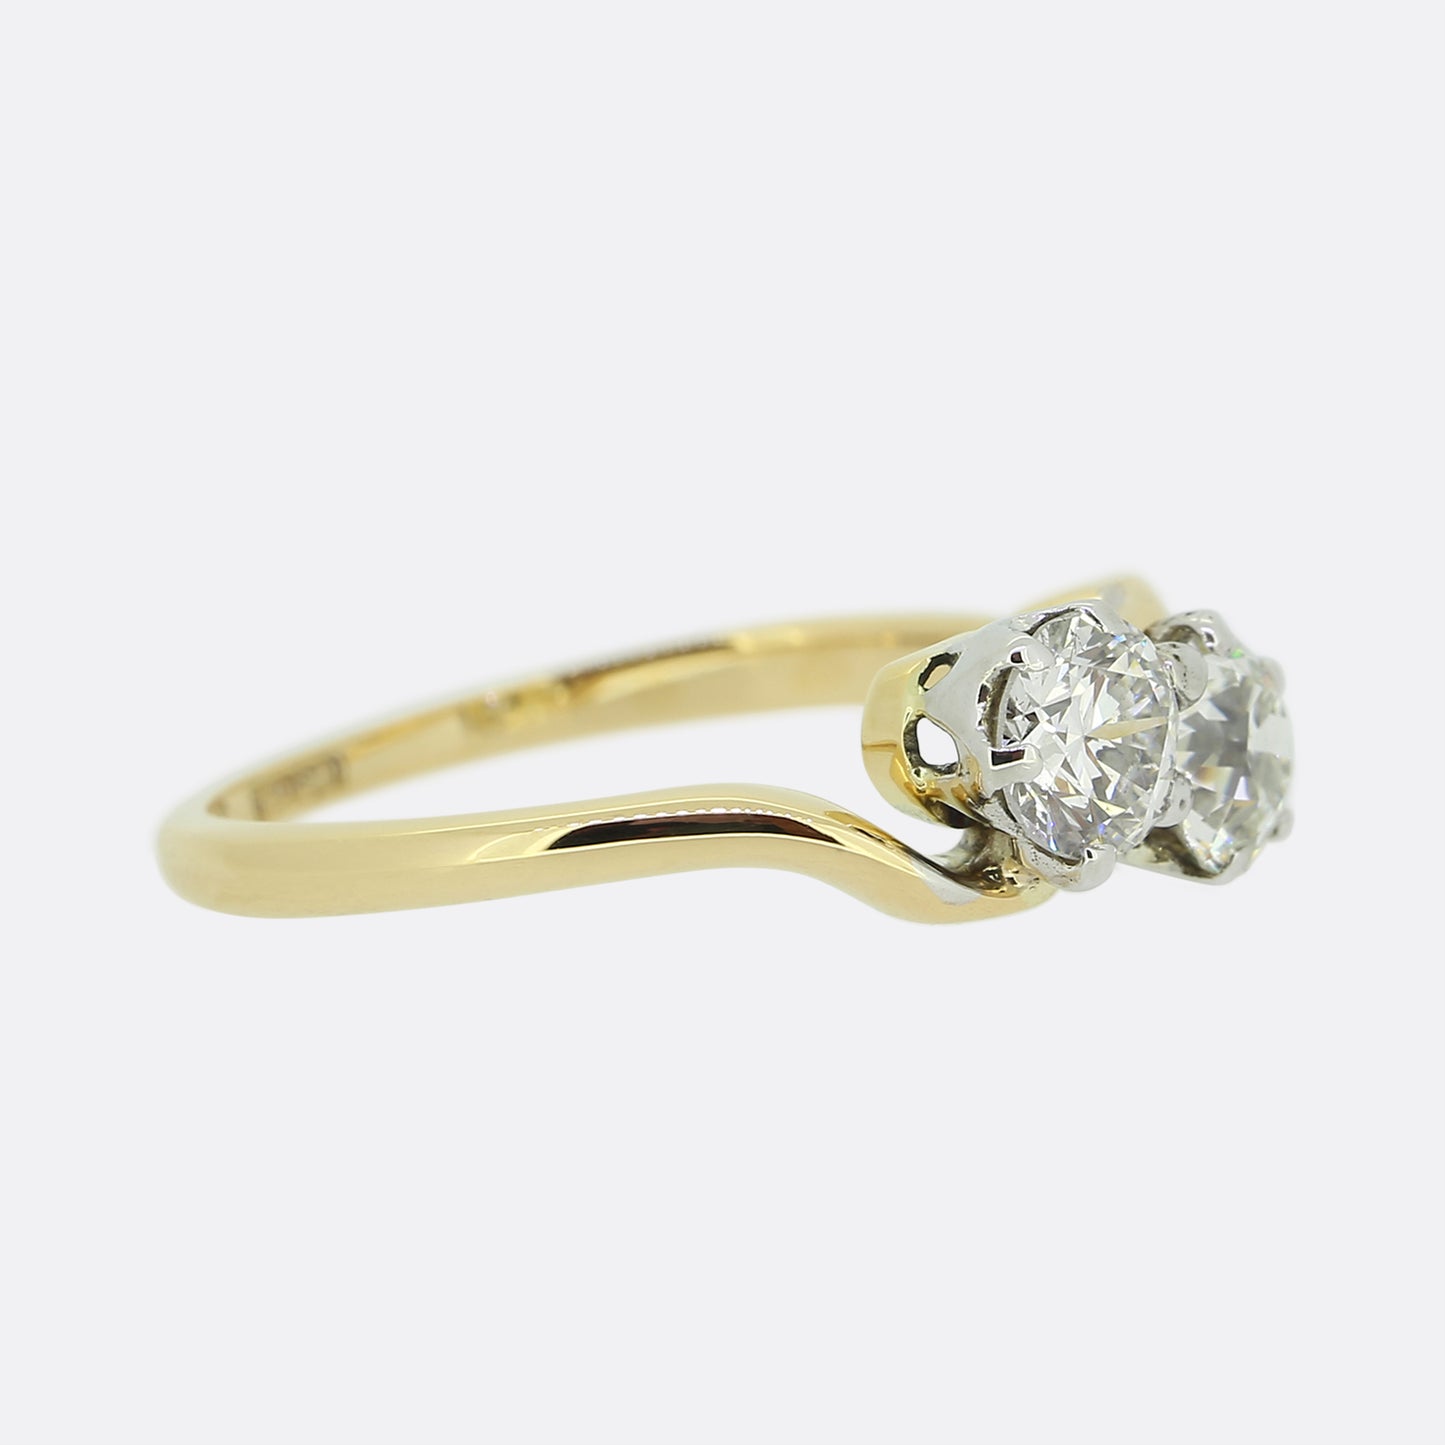 Vintage Two-Stone Diamond Ring